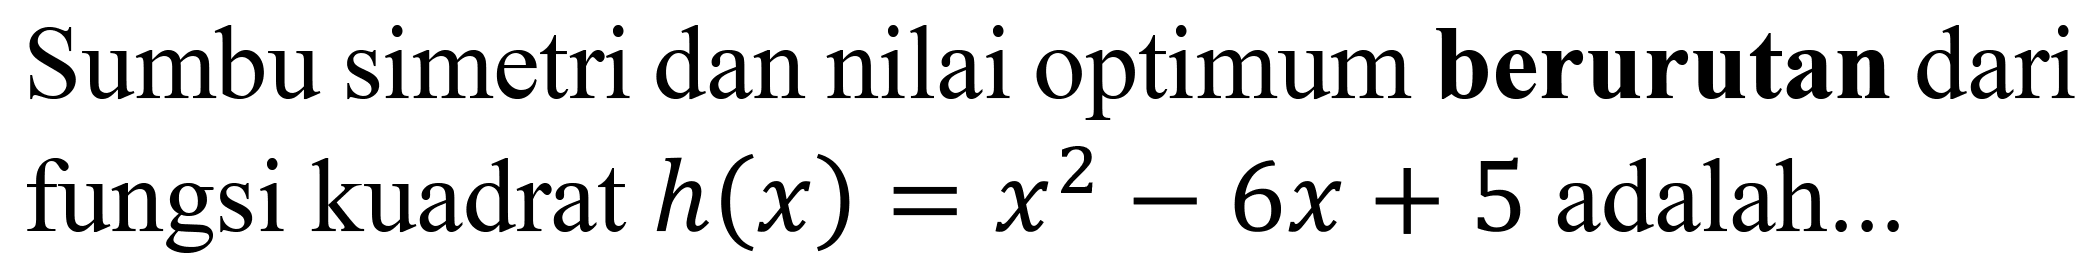 Sumbu simetri dan nilai optimum berurutan dari fungsi kuadrat  h(x)=x^(2)-6 x+5  adalah...